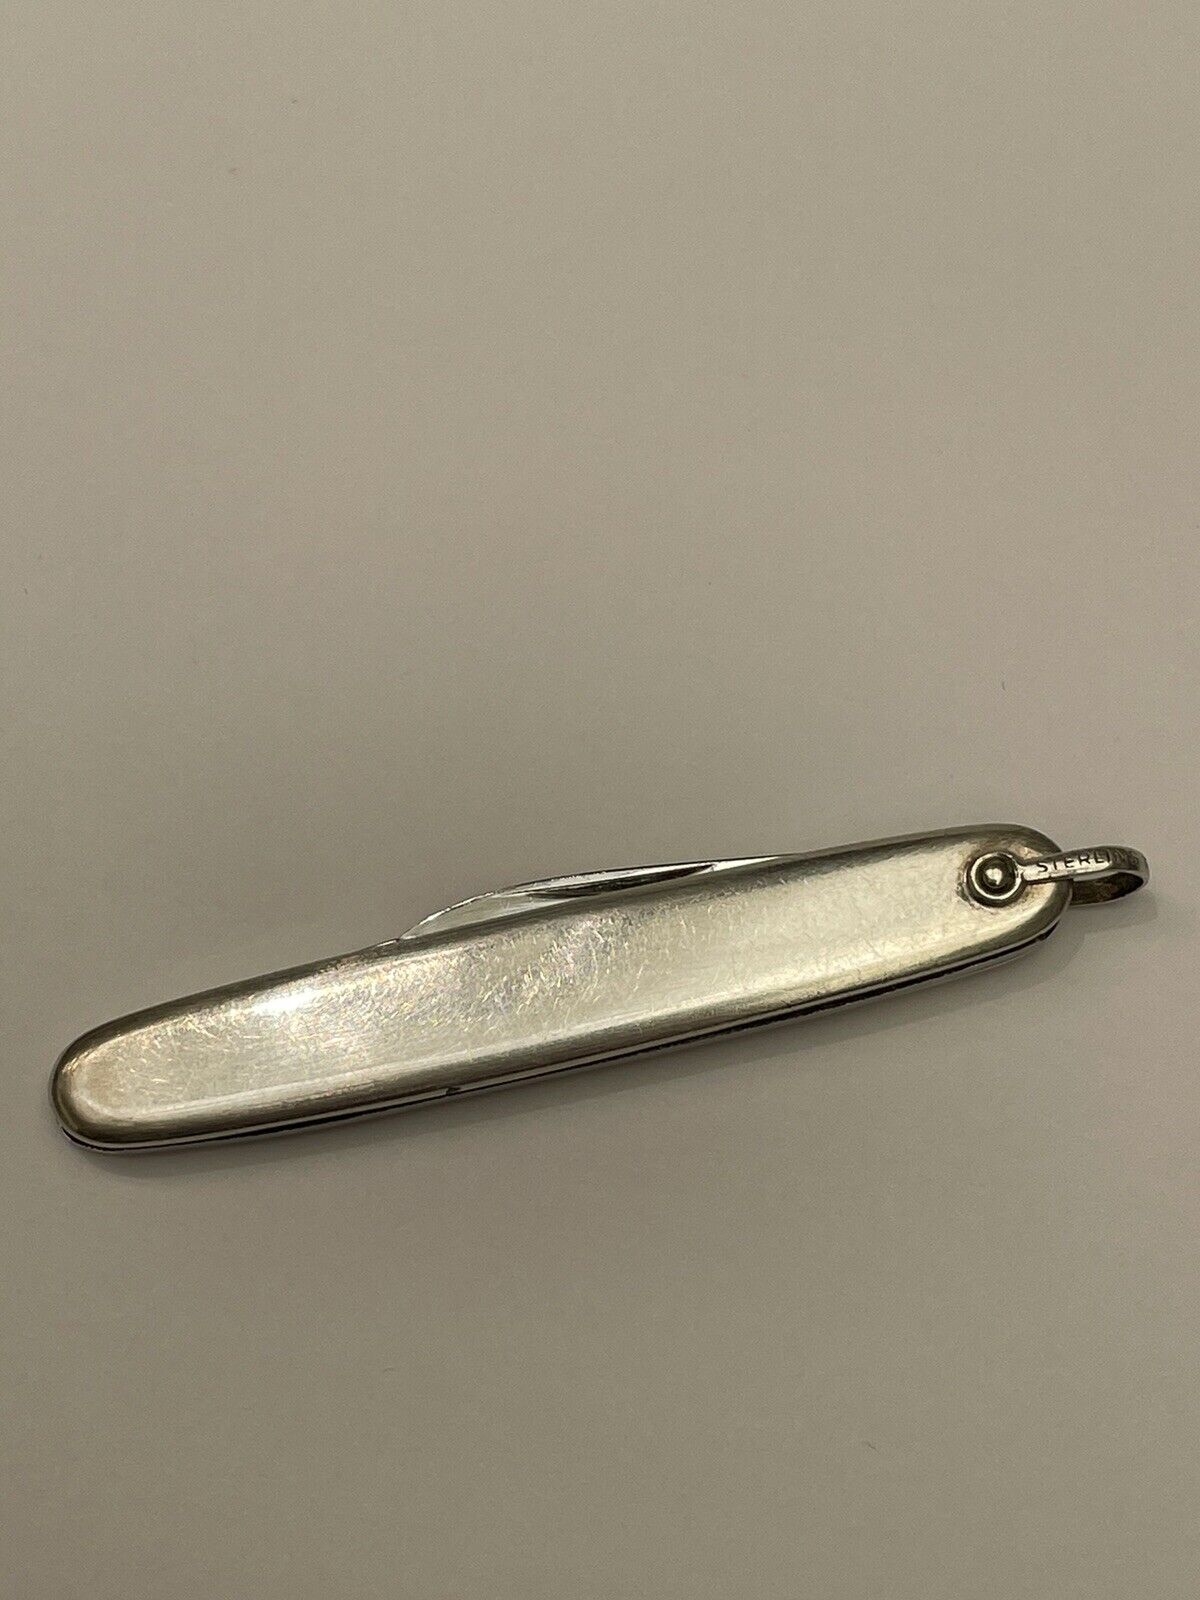 Vintage Tiffany & Co 2 Blade Pocket Knife Solid 925 Sterling Silver